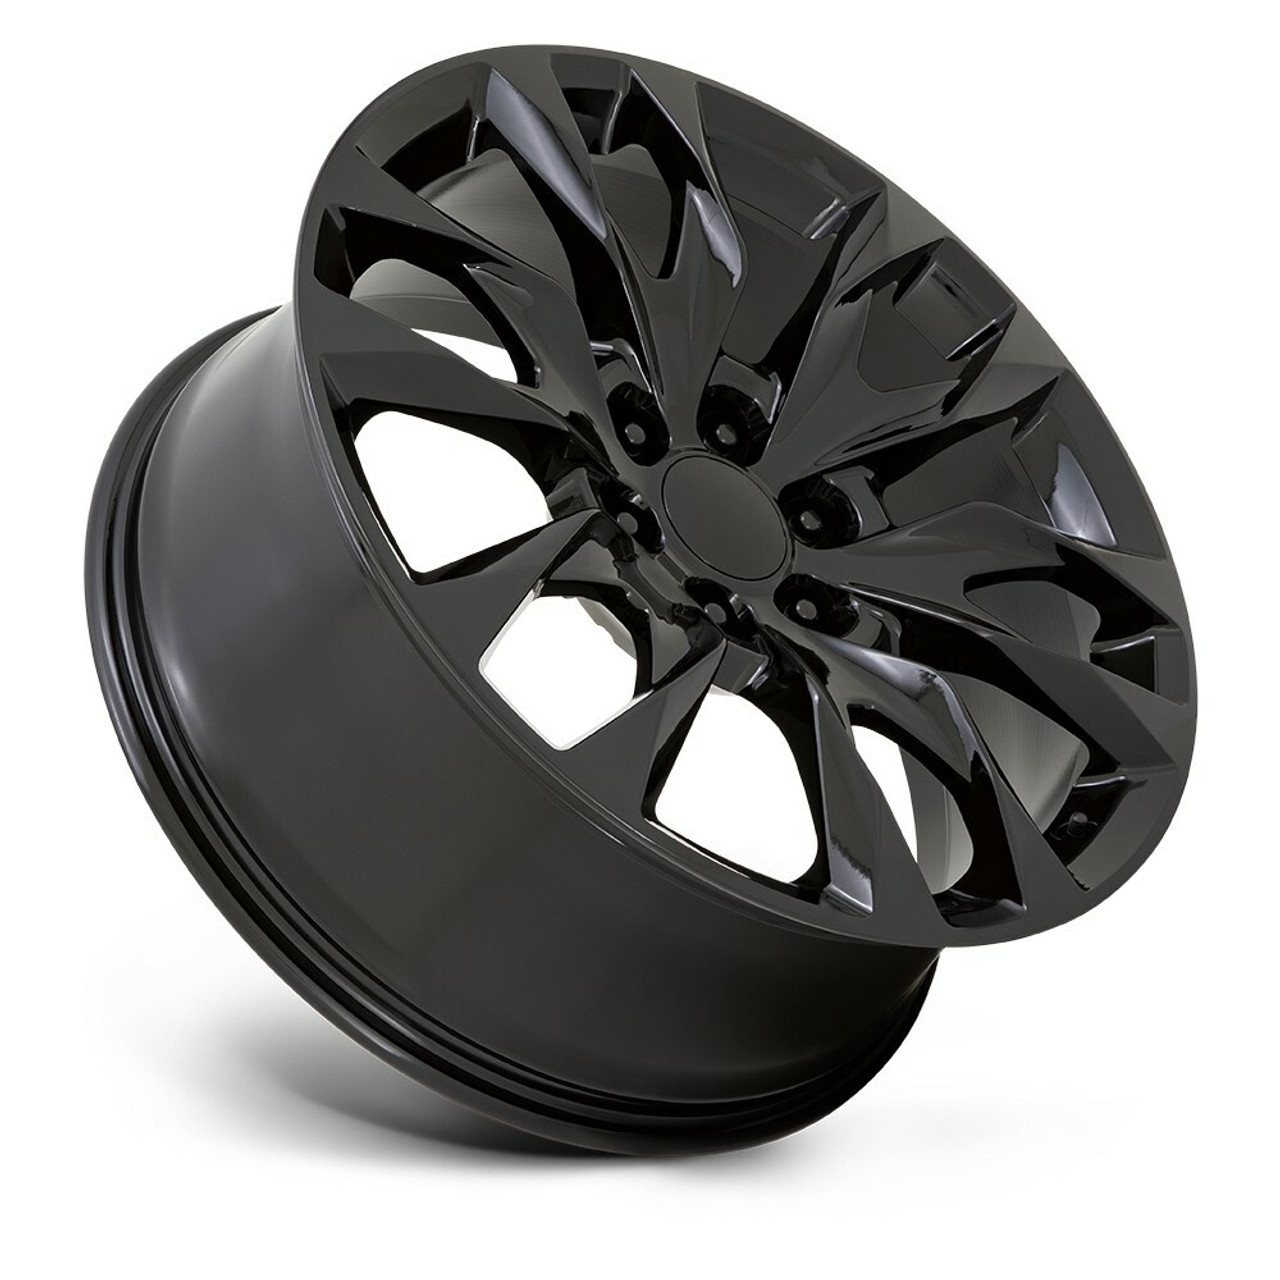 Set 4 Performance Replicas PR210 22x9 6x5.5 Gloss Black Wheels 22" 28mm Rims